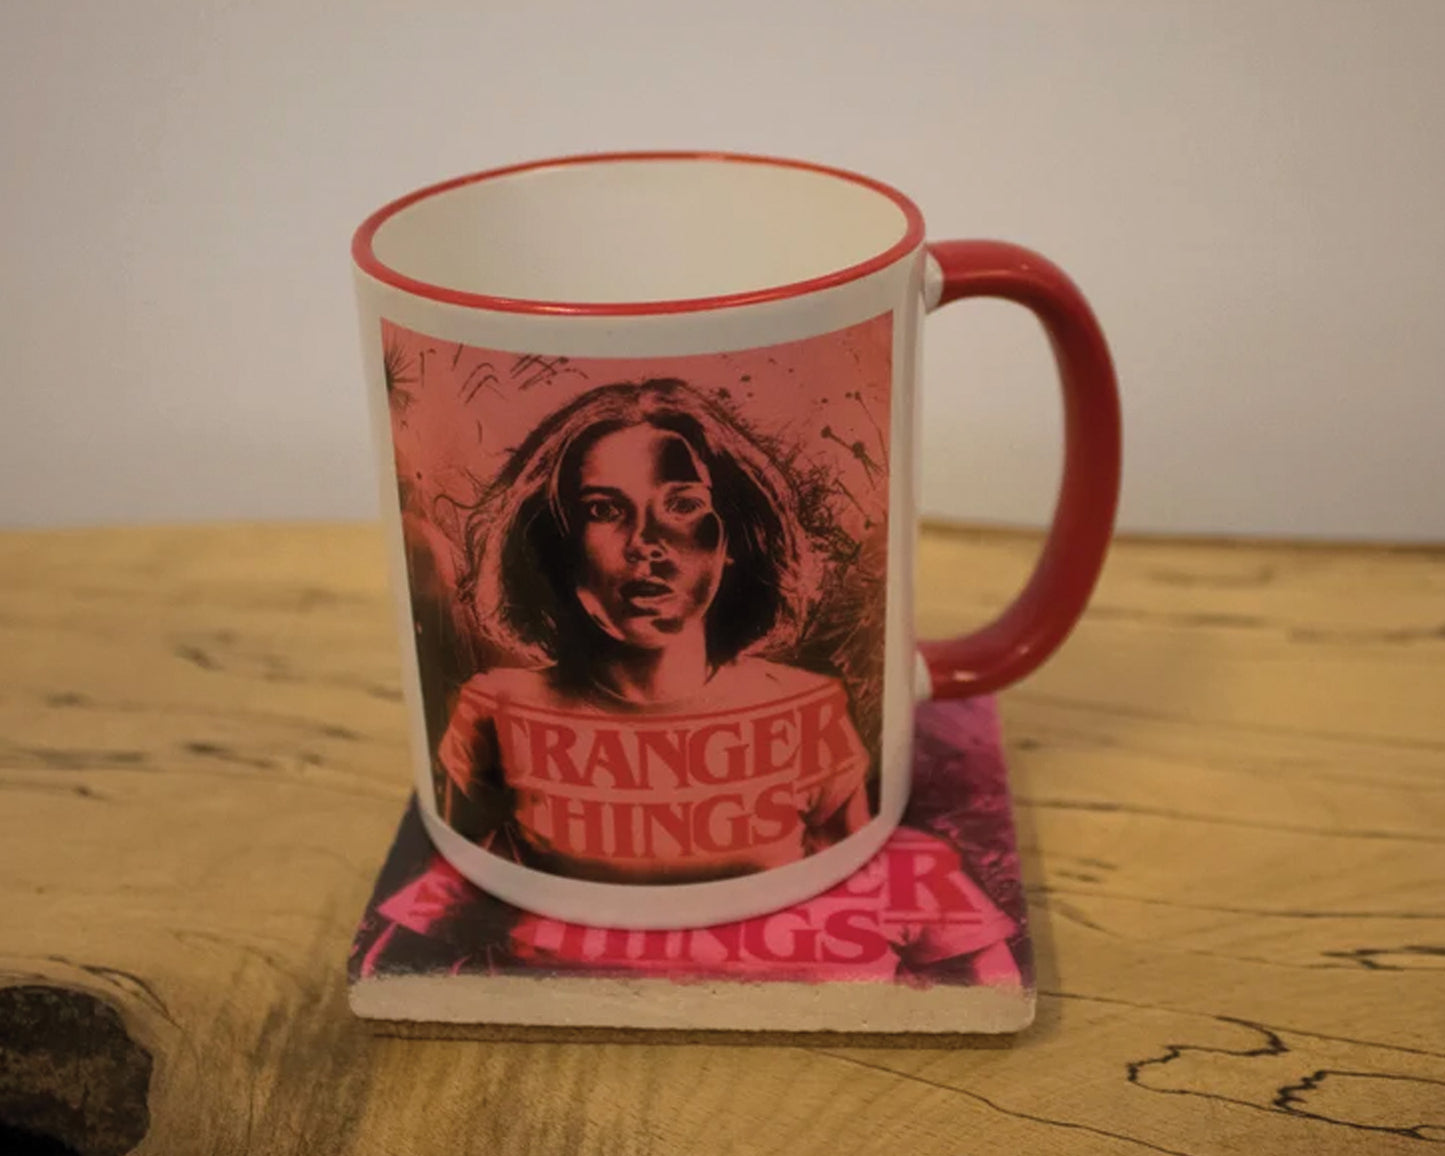 Eleven Stranger Things Stone Coasters & Mug Set